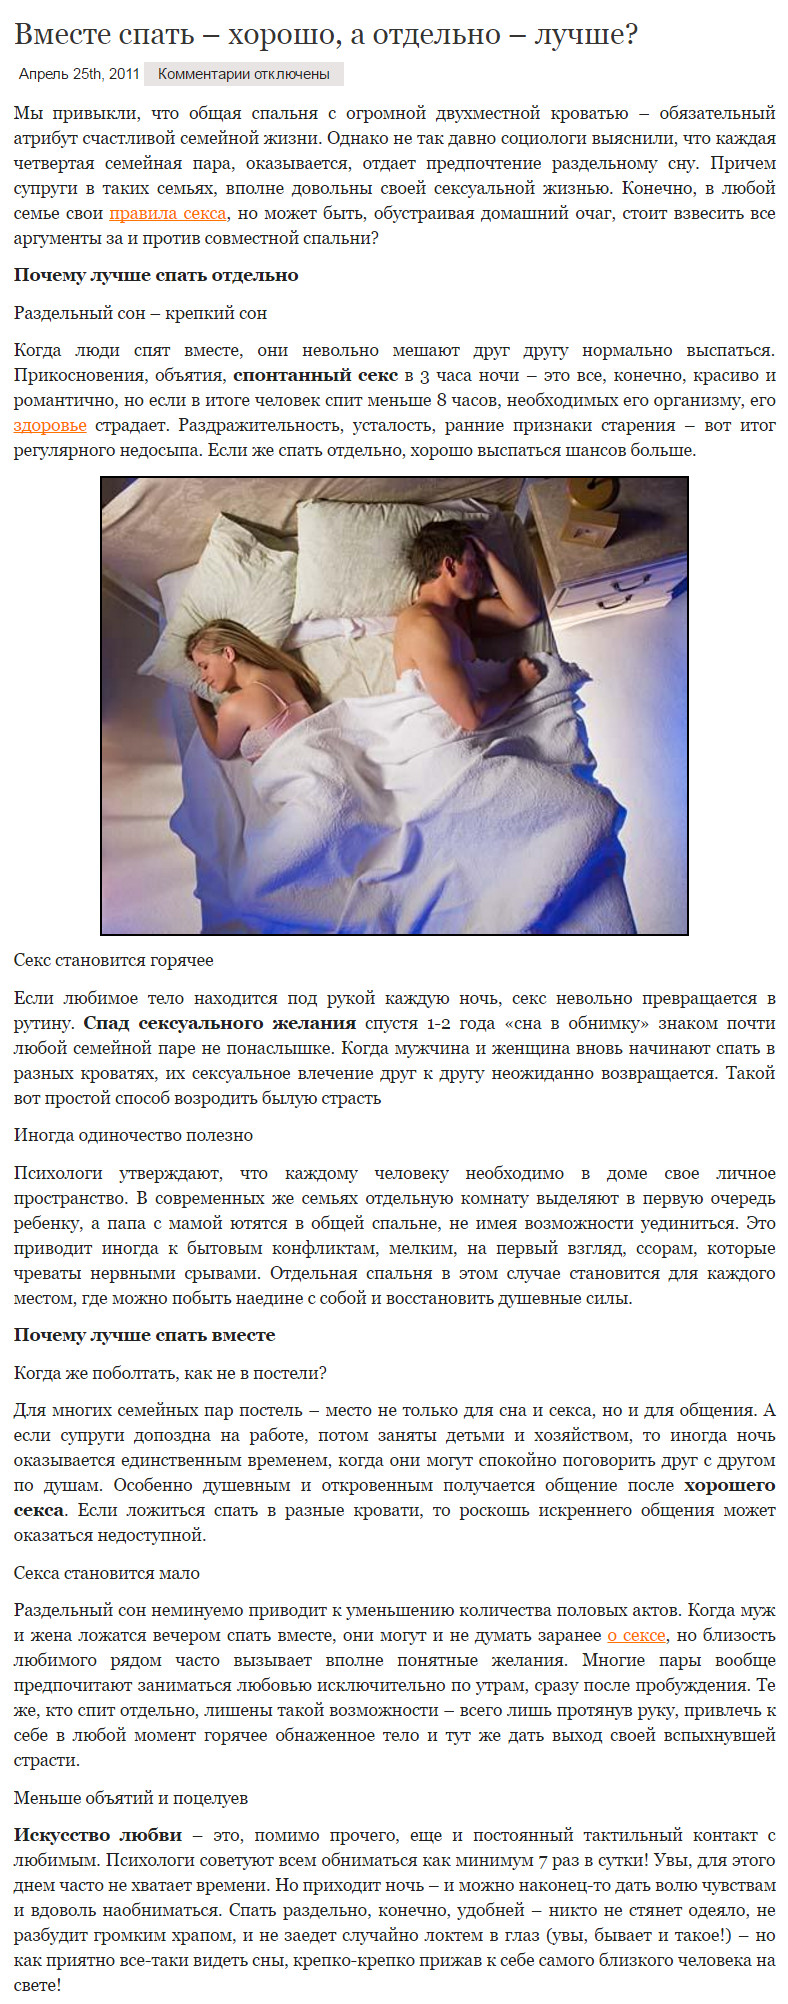 Примета муж и жена спят на разных кроватях